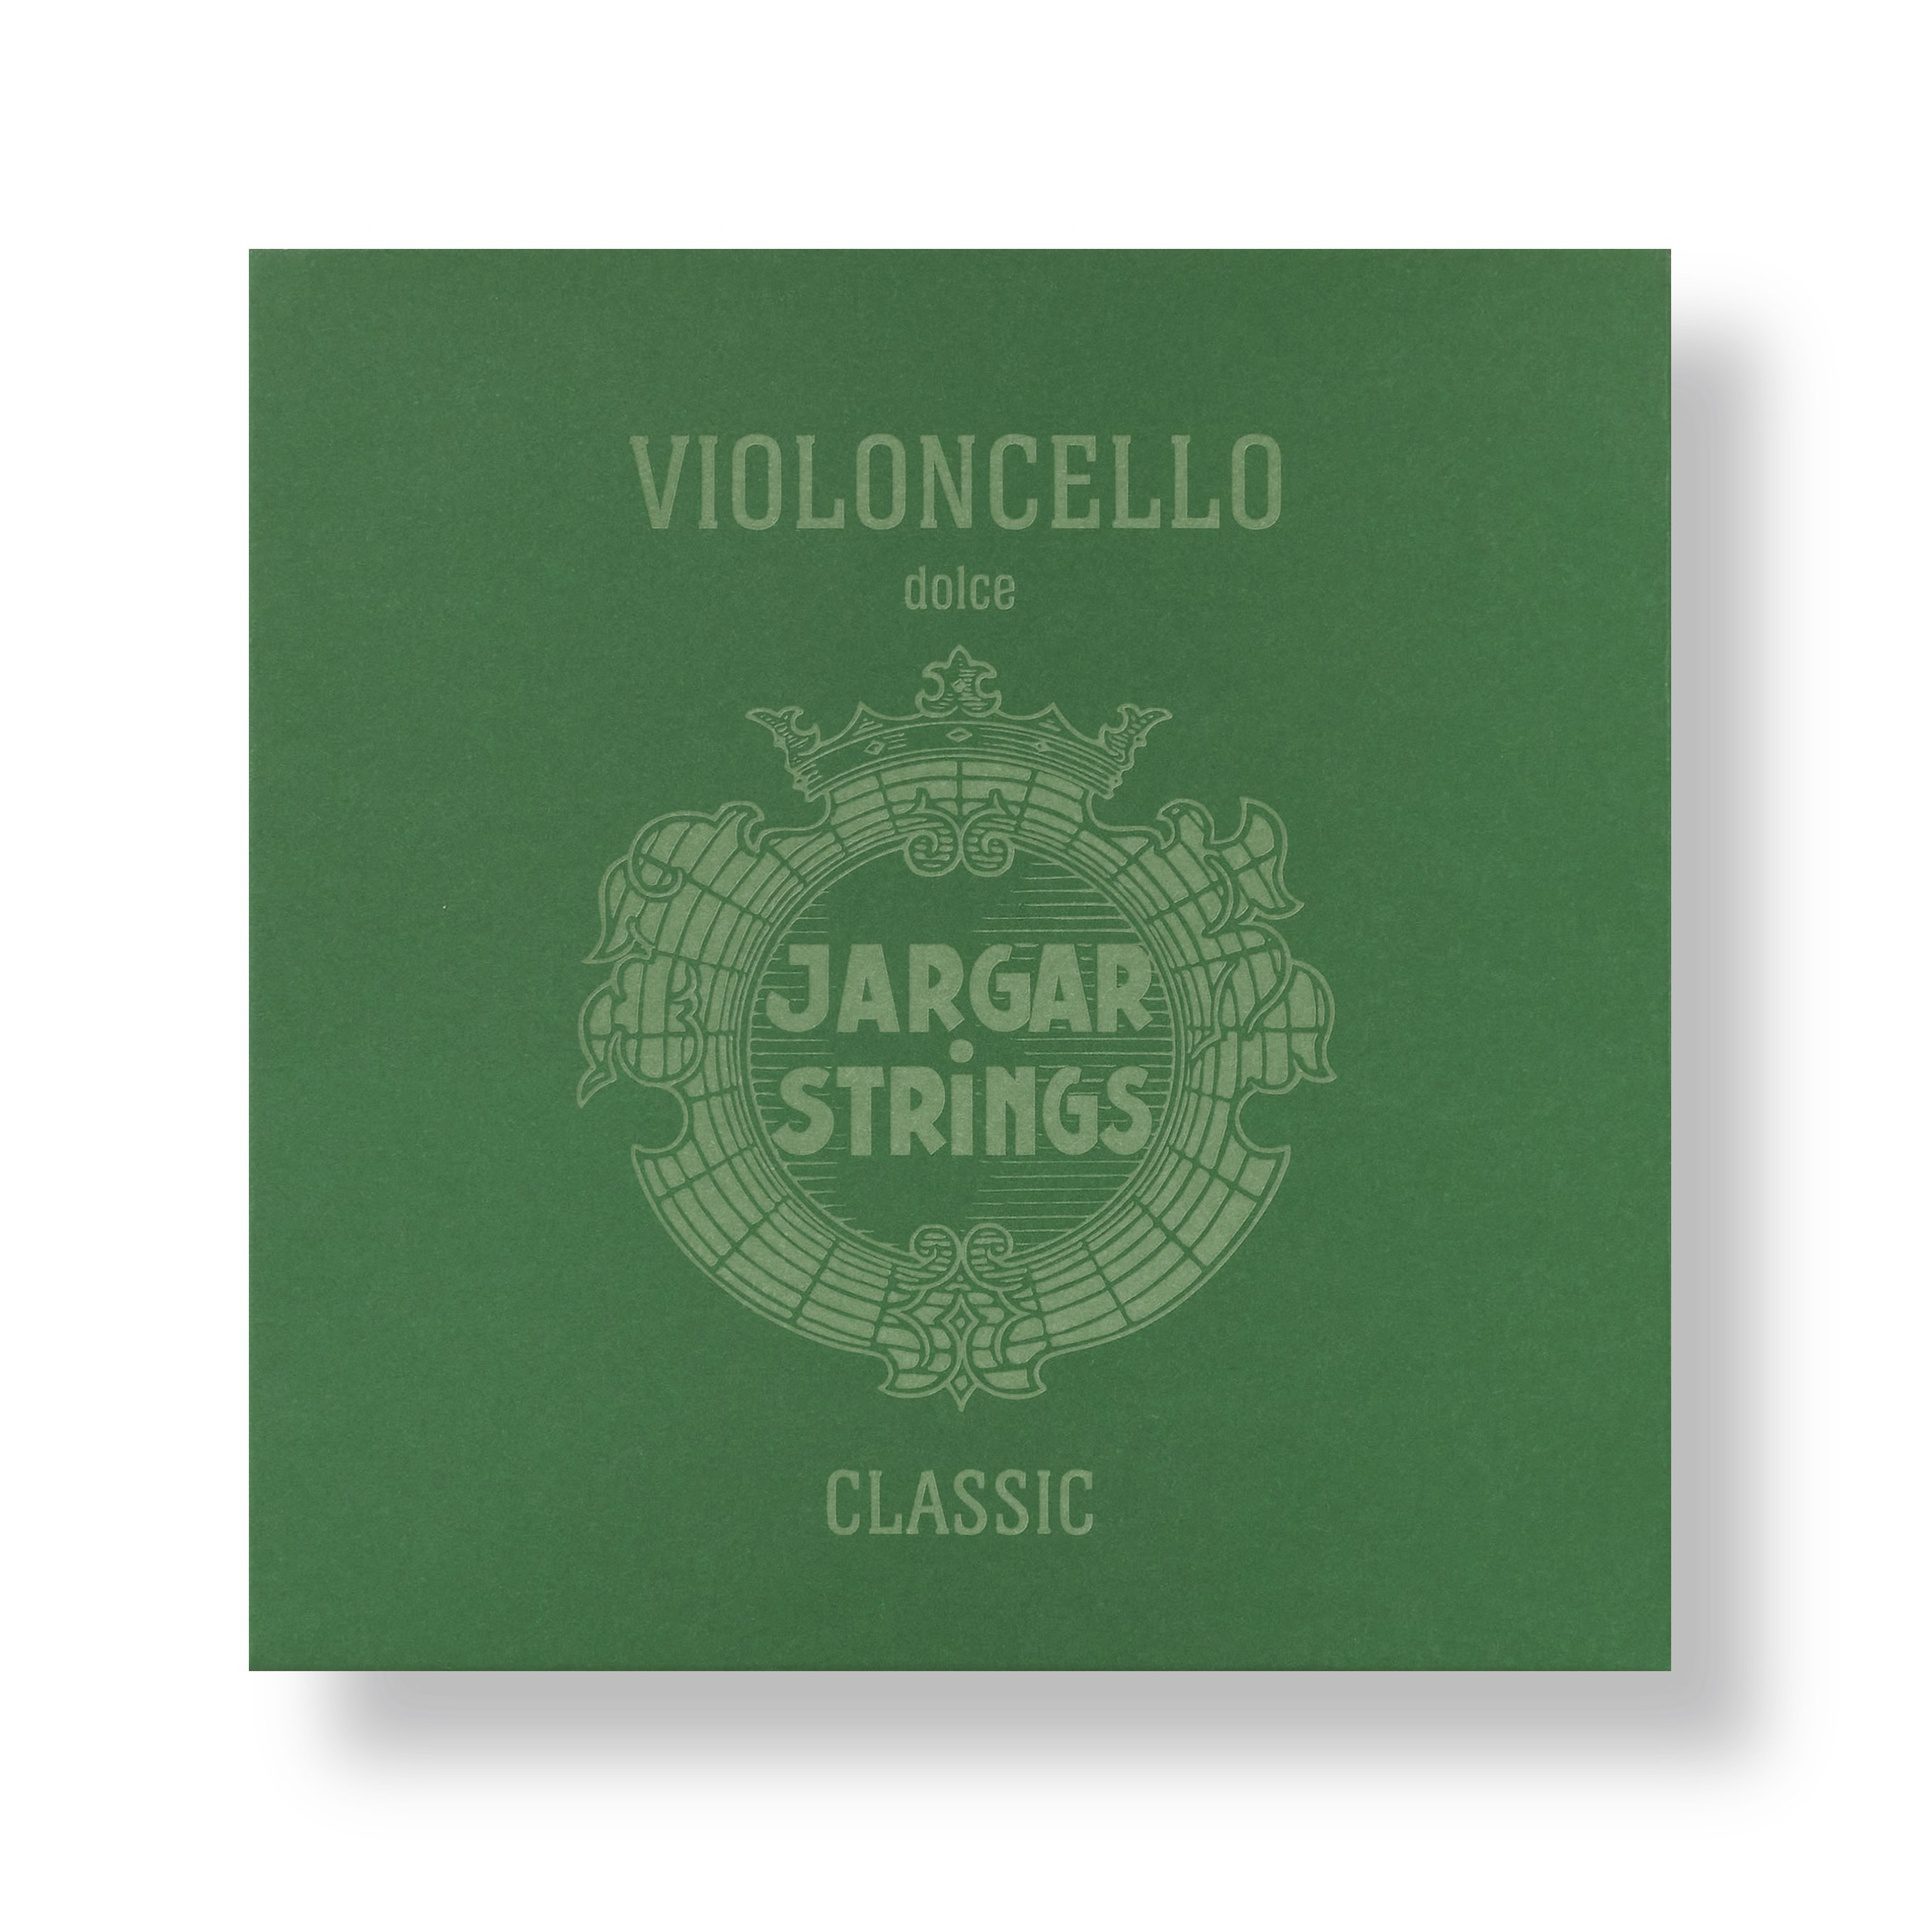 Classic Violoncello - Dolce, Set, 4/4